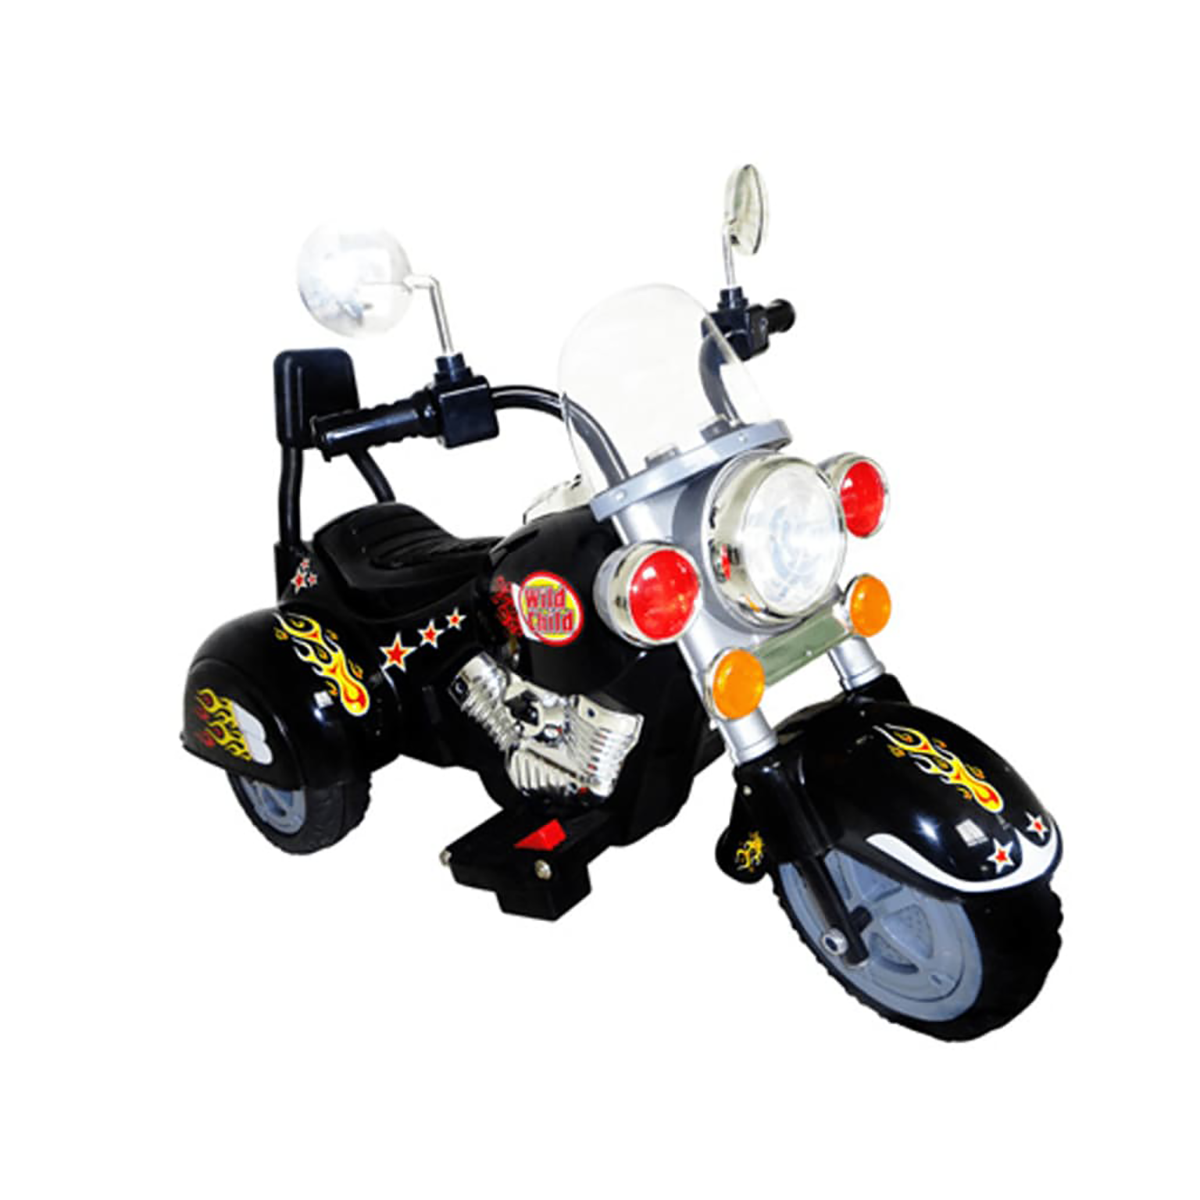 VIDAXL Kinder Motorrad Chopper Kinderfahrzeug